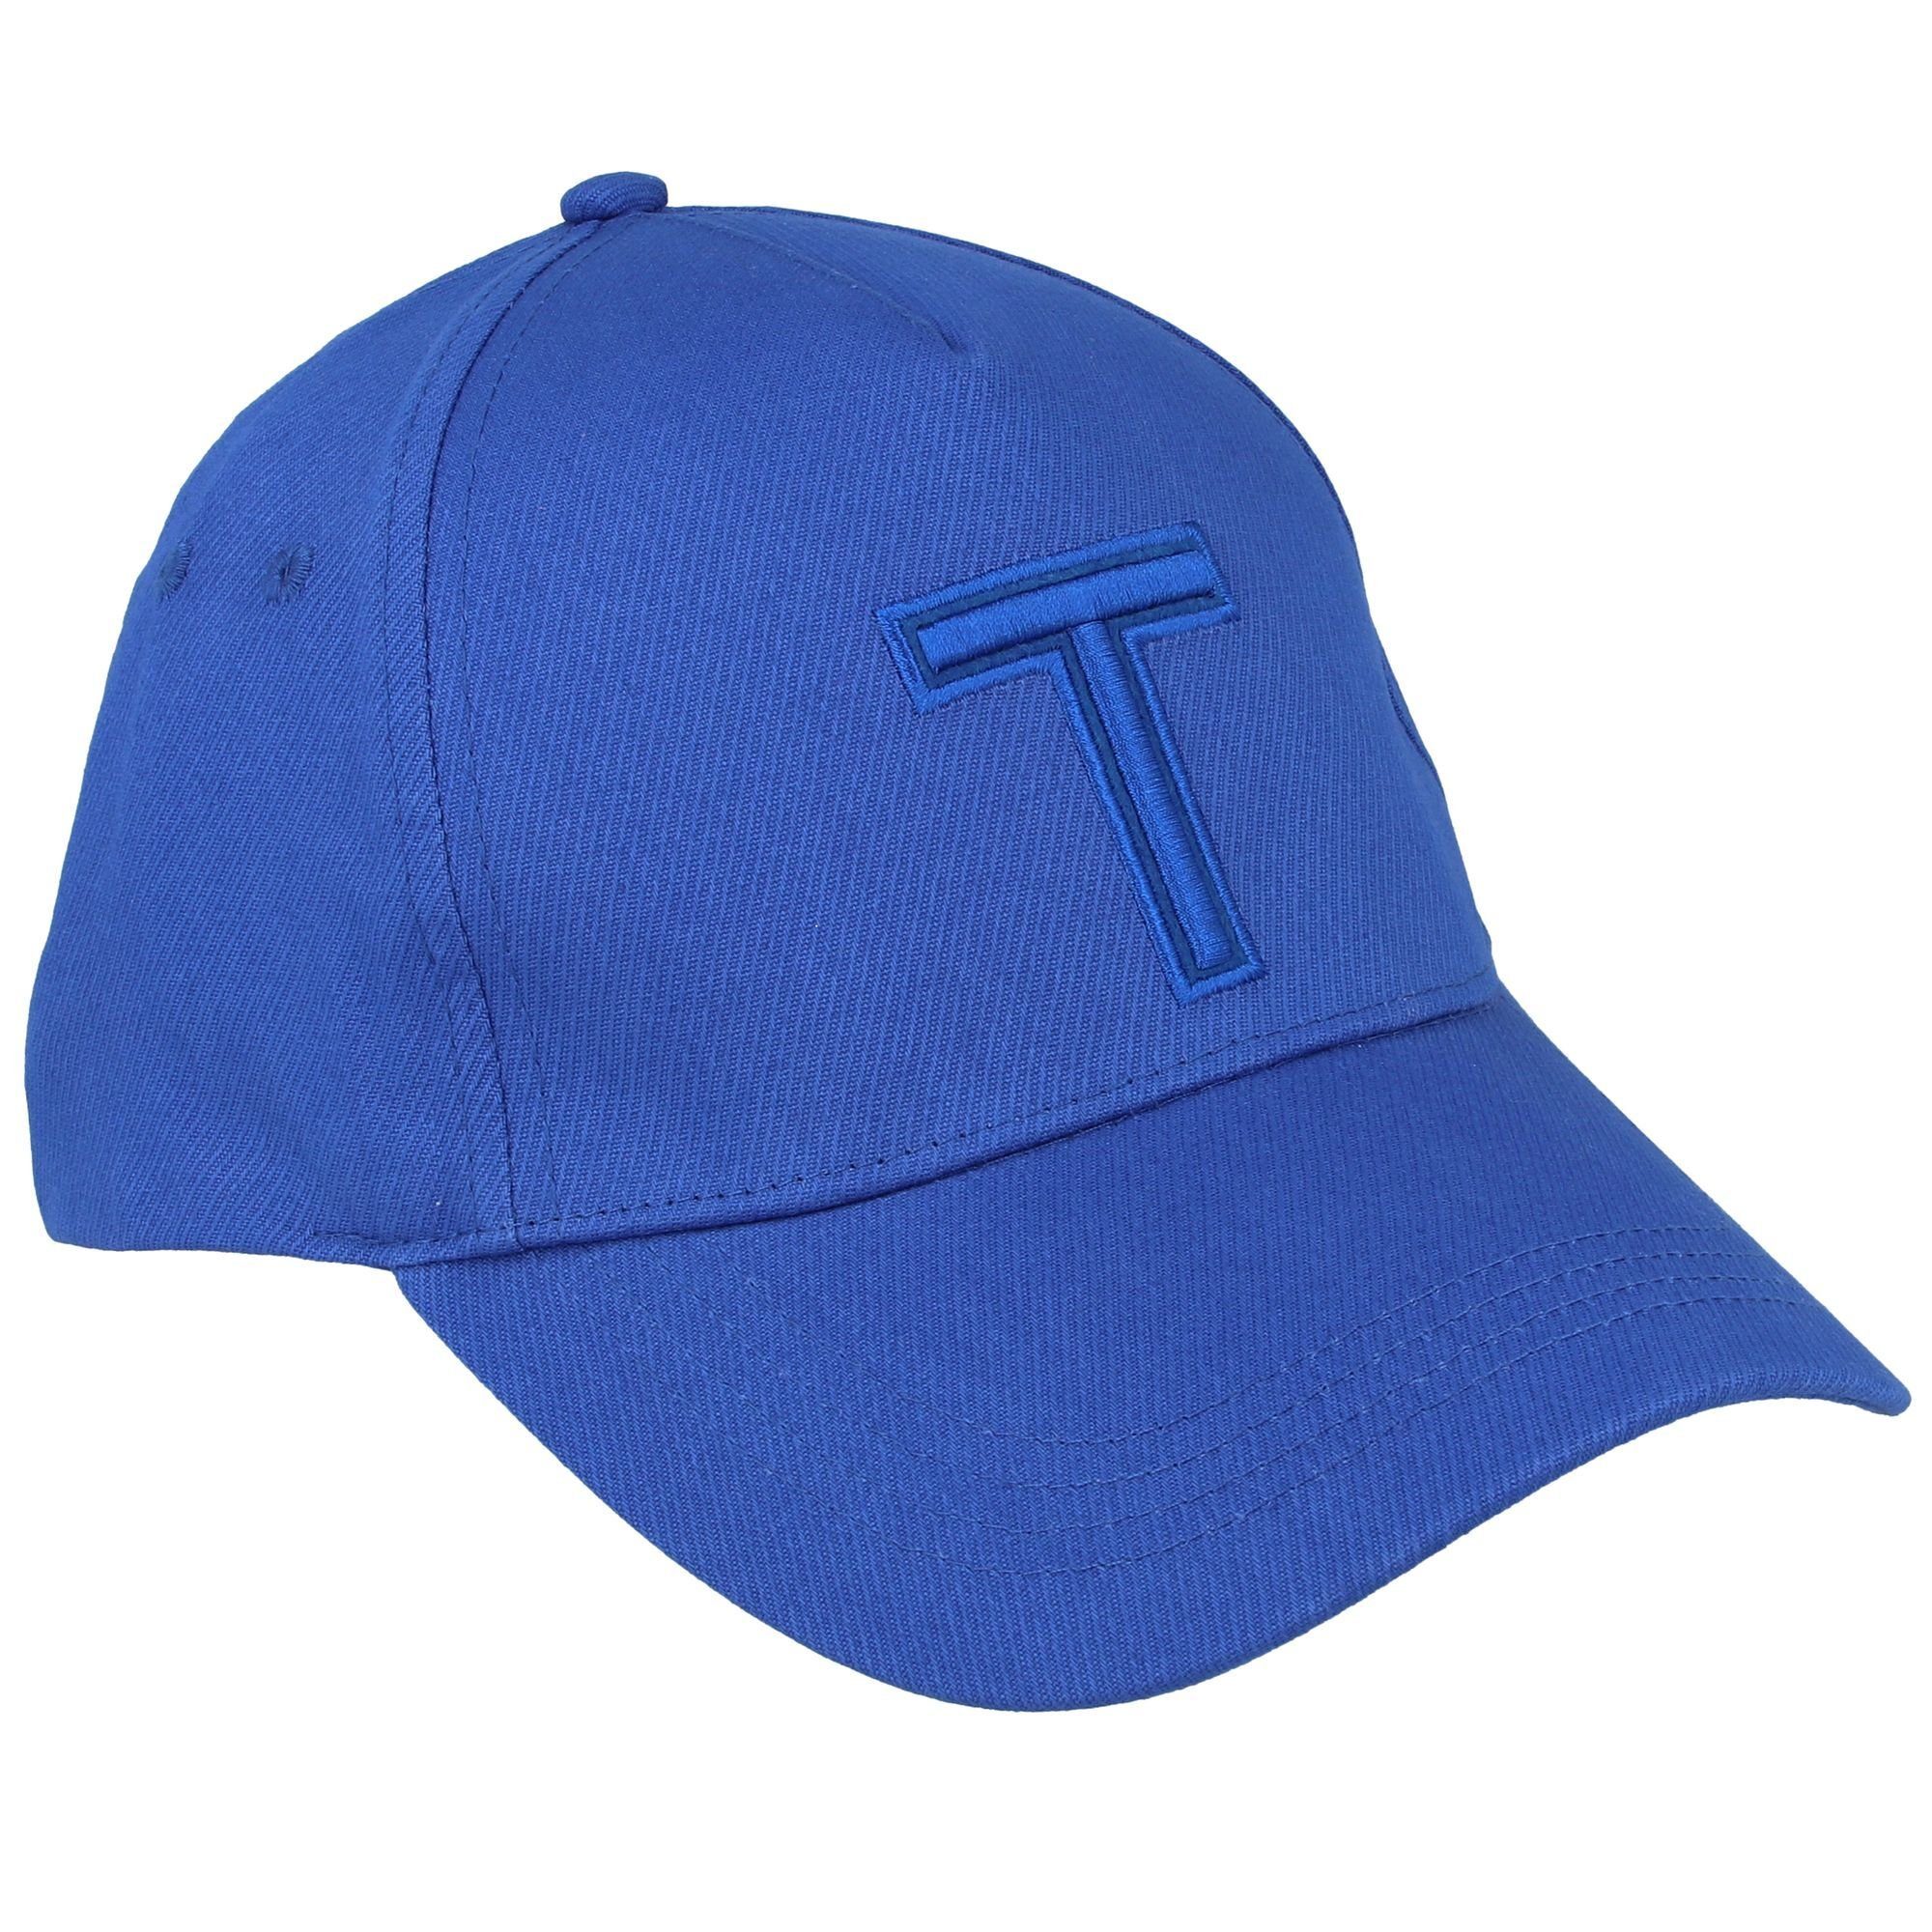 Tristen Baseball Baker Cap brt-blue Ted